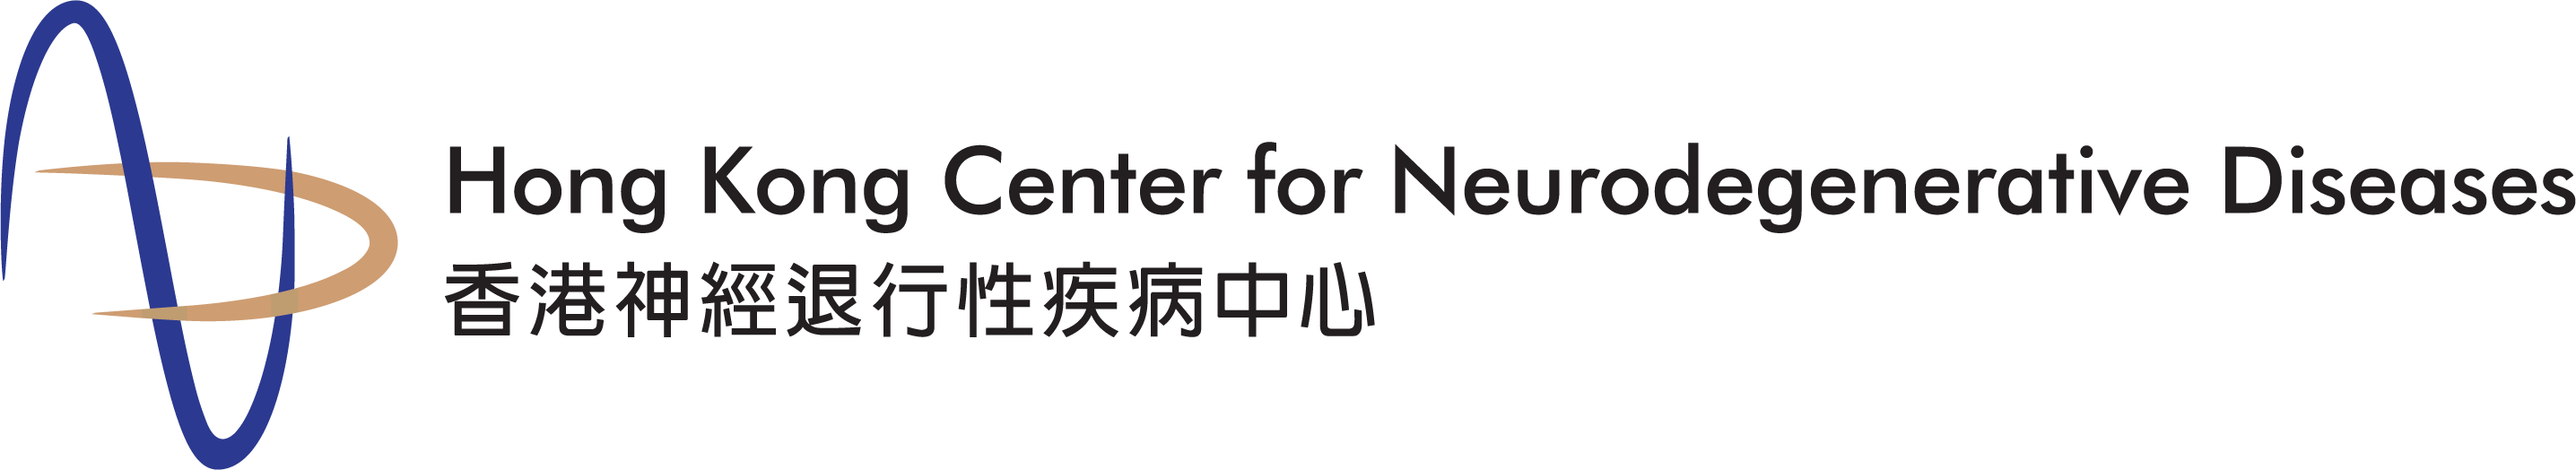 Hong Kong Center for Neurodegenerative Diseases | HKCeND